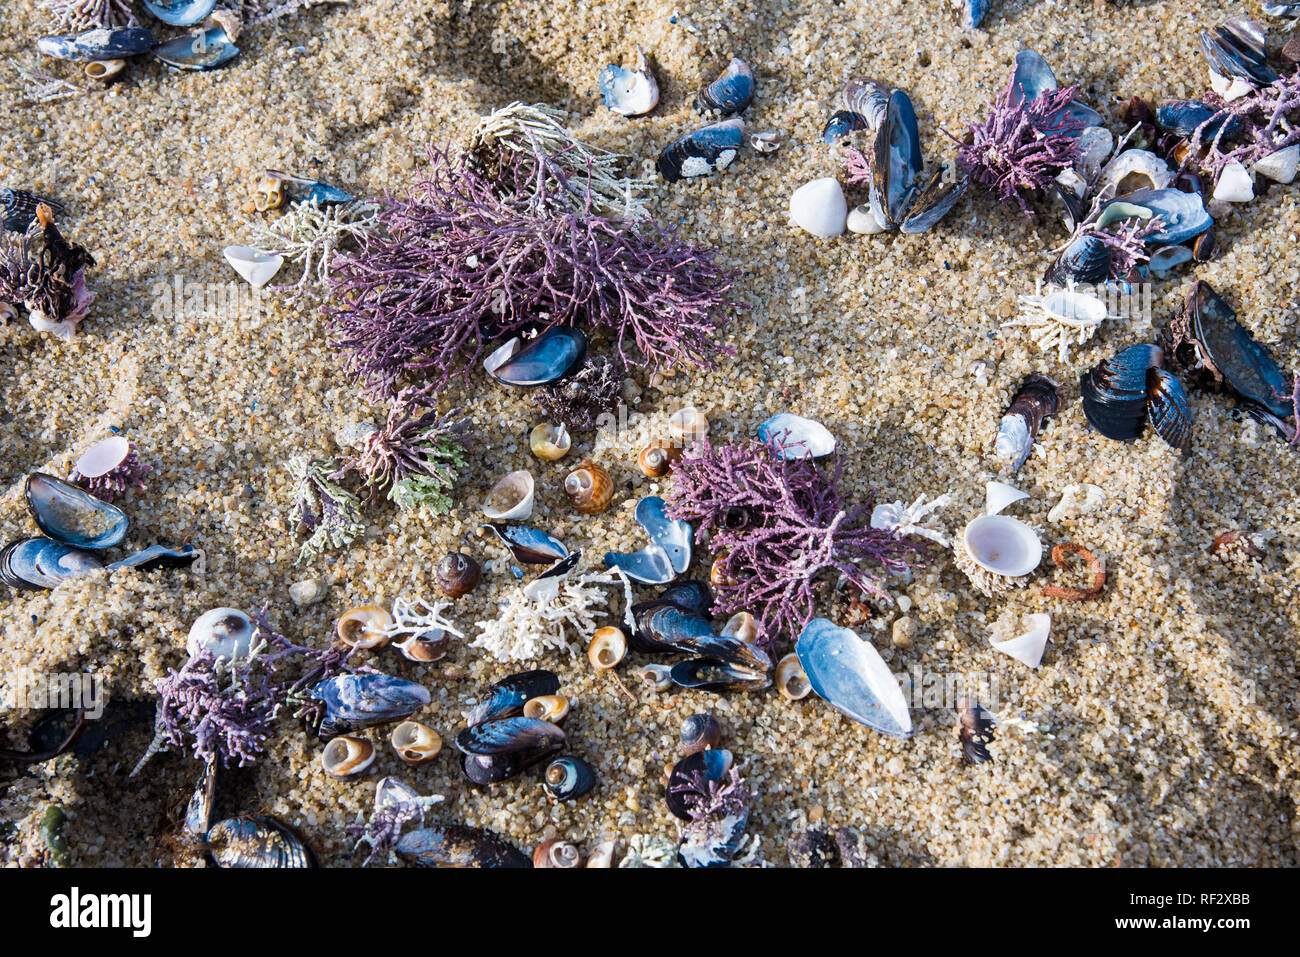 Conchas de colores, corales y criaturas del mar en la playa. Los patrones y colores cambian con cada marea entrante y saliente. Foto de stock